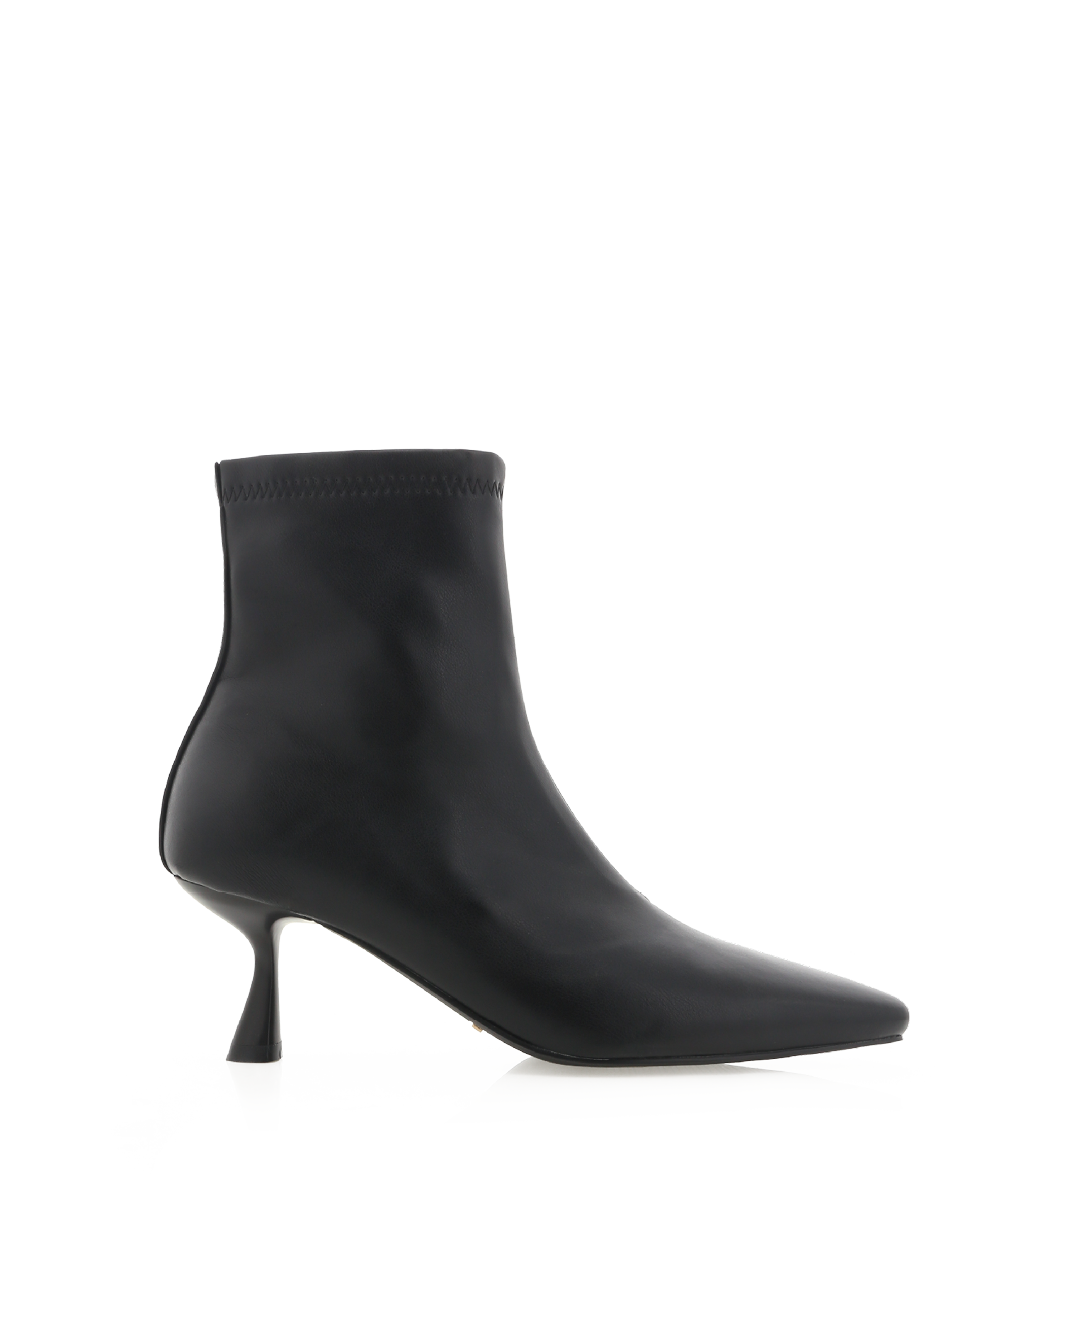 SHARINA - BLACK-Boots-Billini-Billini